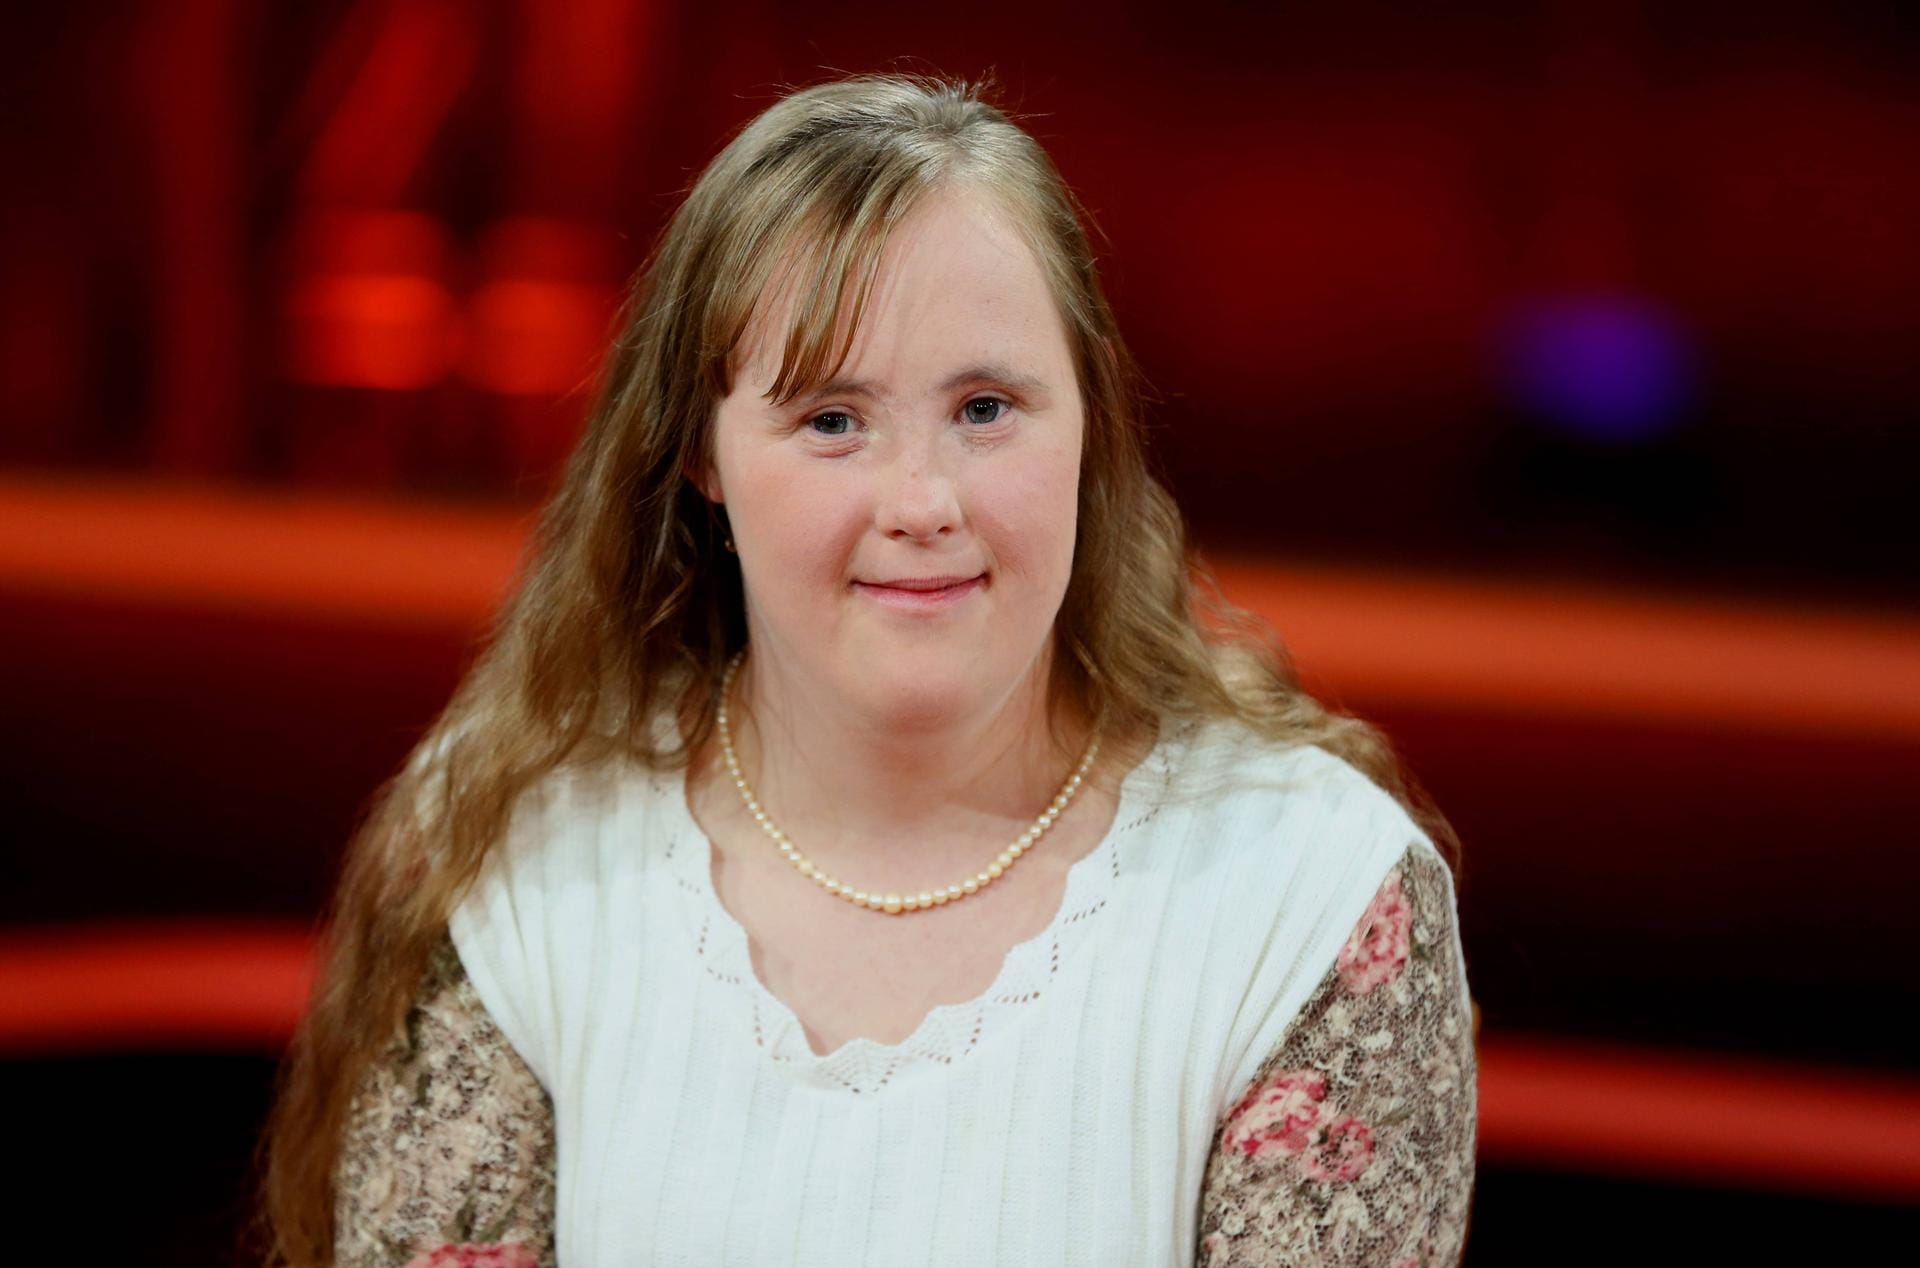 Carina Kühne lebt mit dem Down Syndrom in der ARD Talkshow GÜNTHER JAUCH am 18 05 2014 in Berlin T